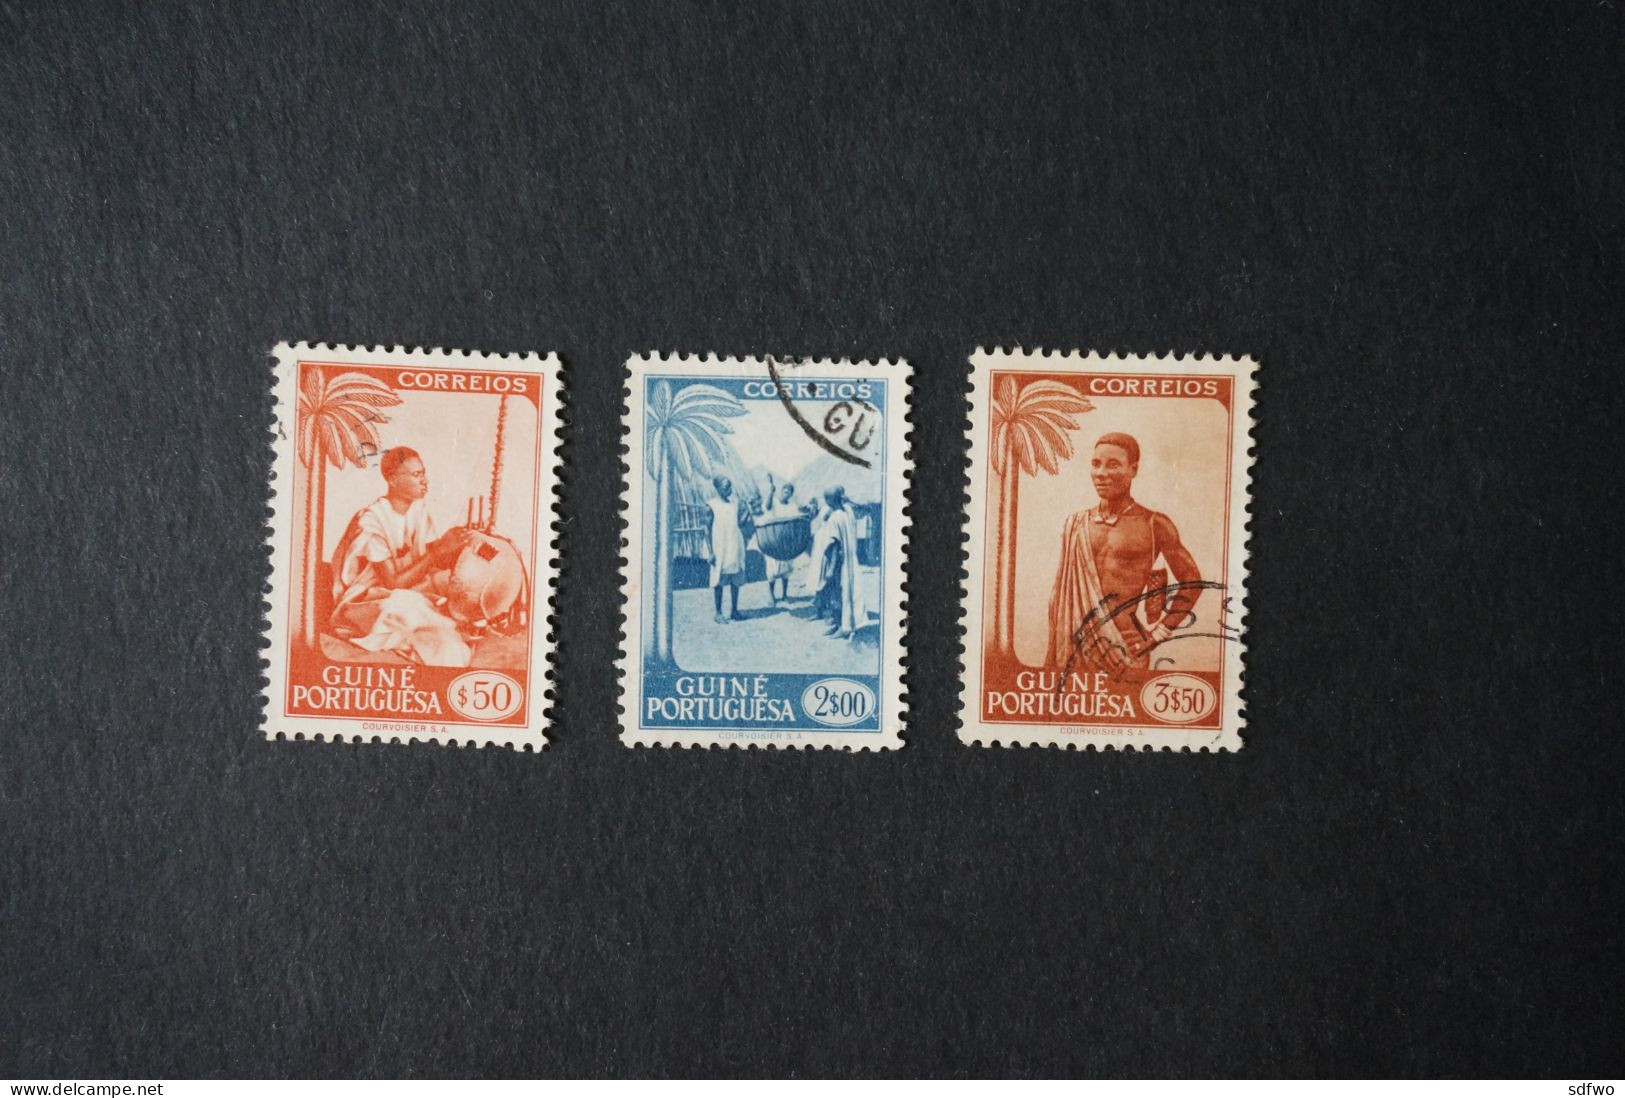 (T1) Portuguese Guiné - 1948 Motifs & Portraits $50, 2$00, 3$50 - Used - Guinée Portugaise